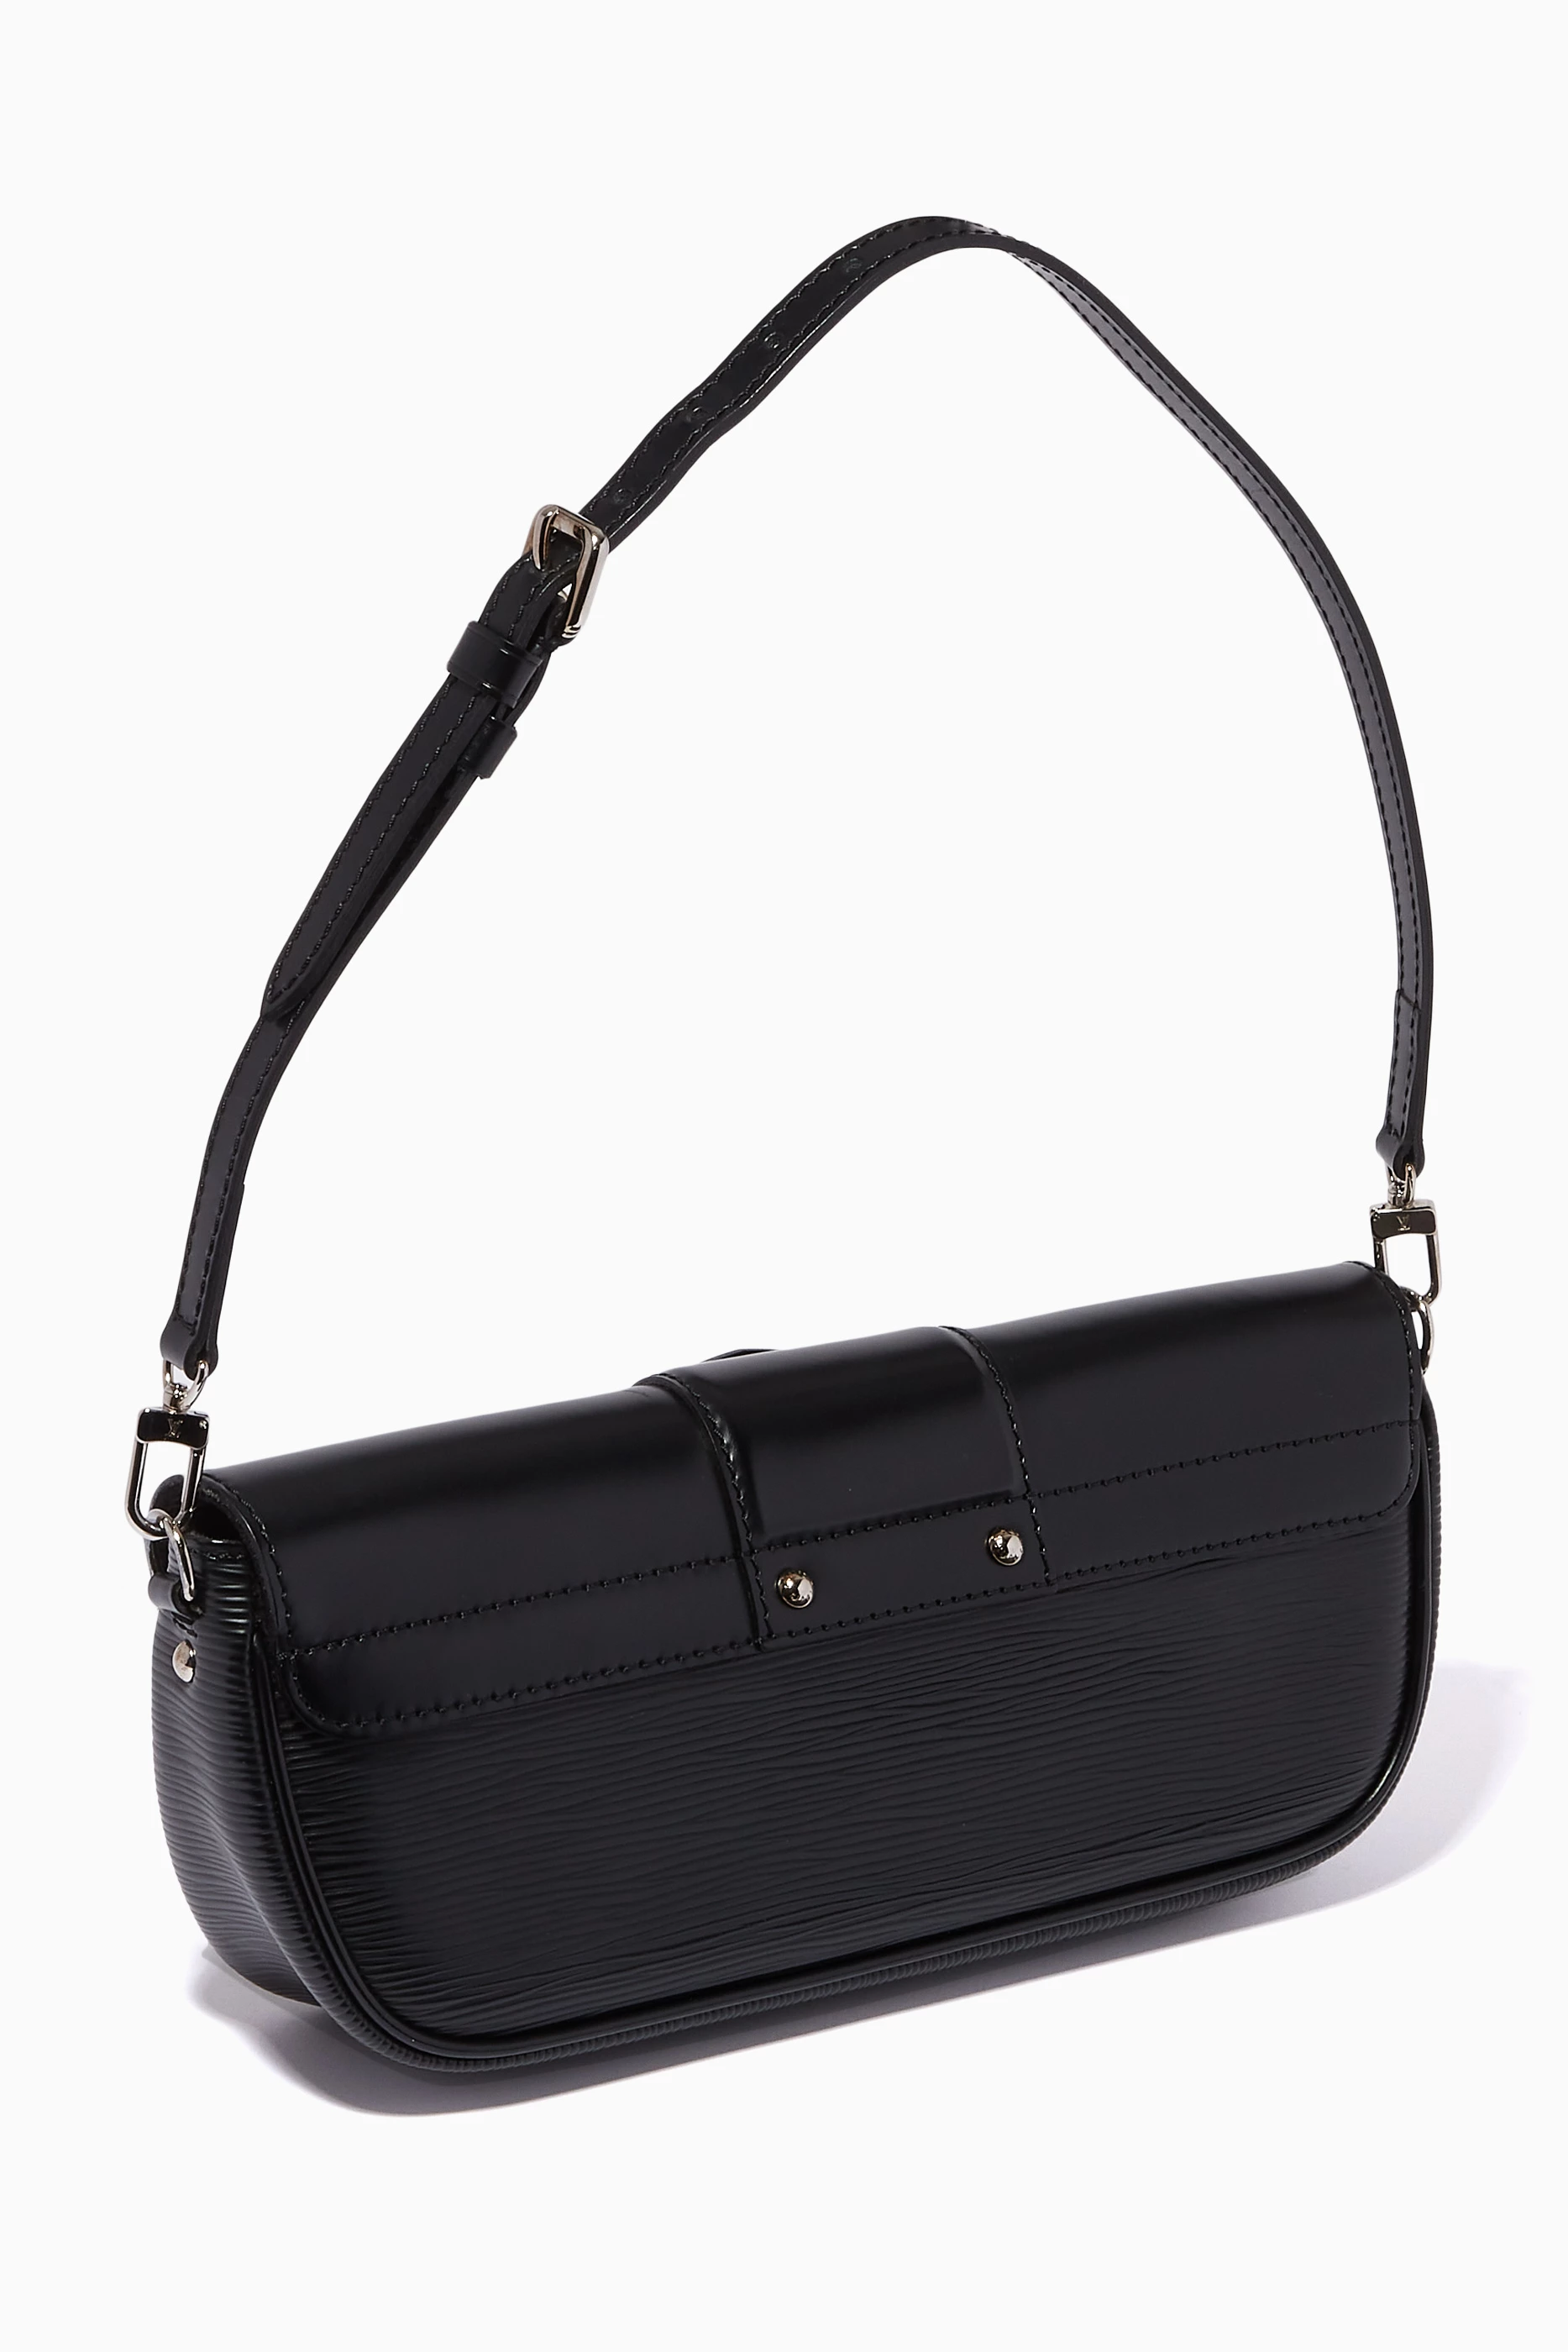 Louis Vuitton - Authenticated Néonoé Handbag - Leather Camel for Women, Never Worn